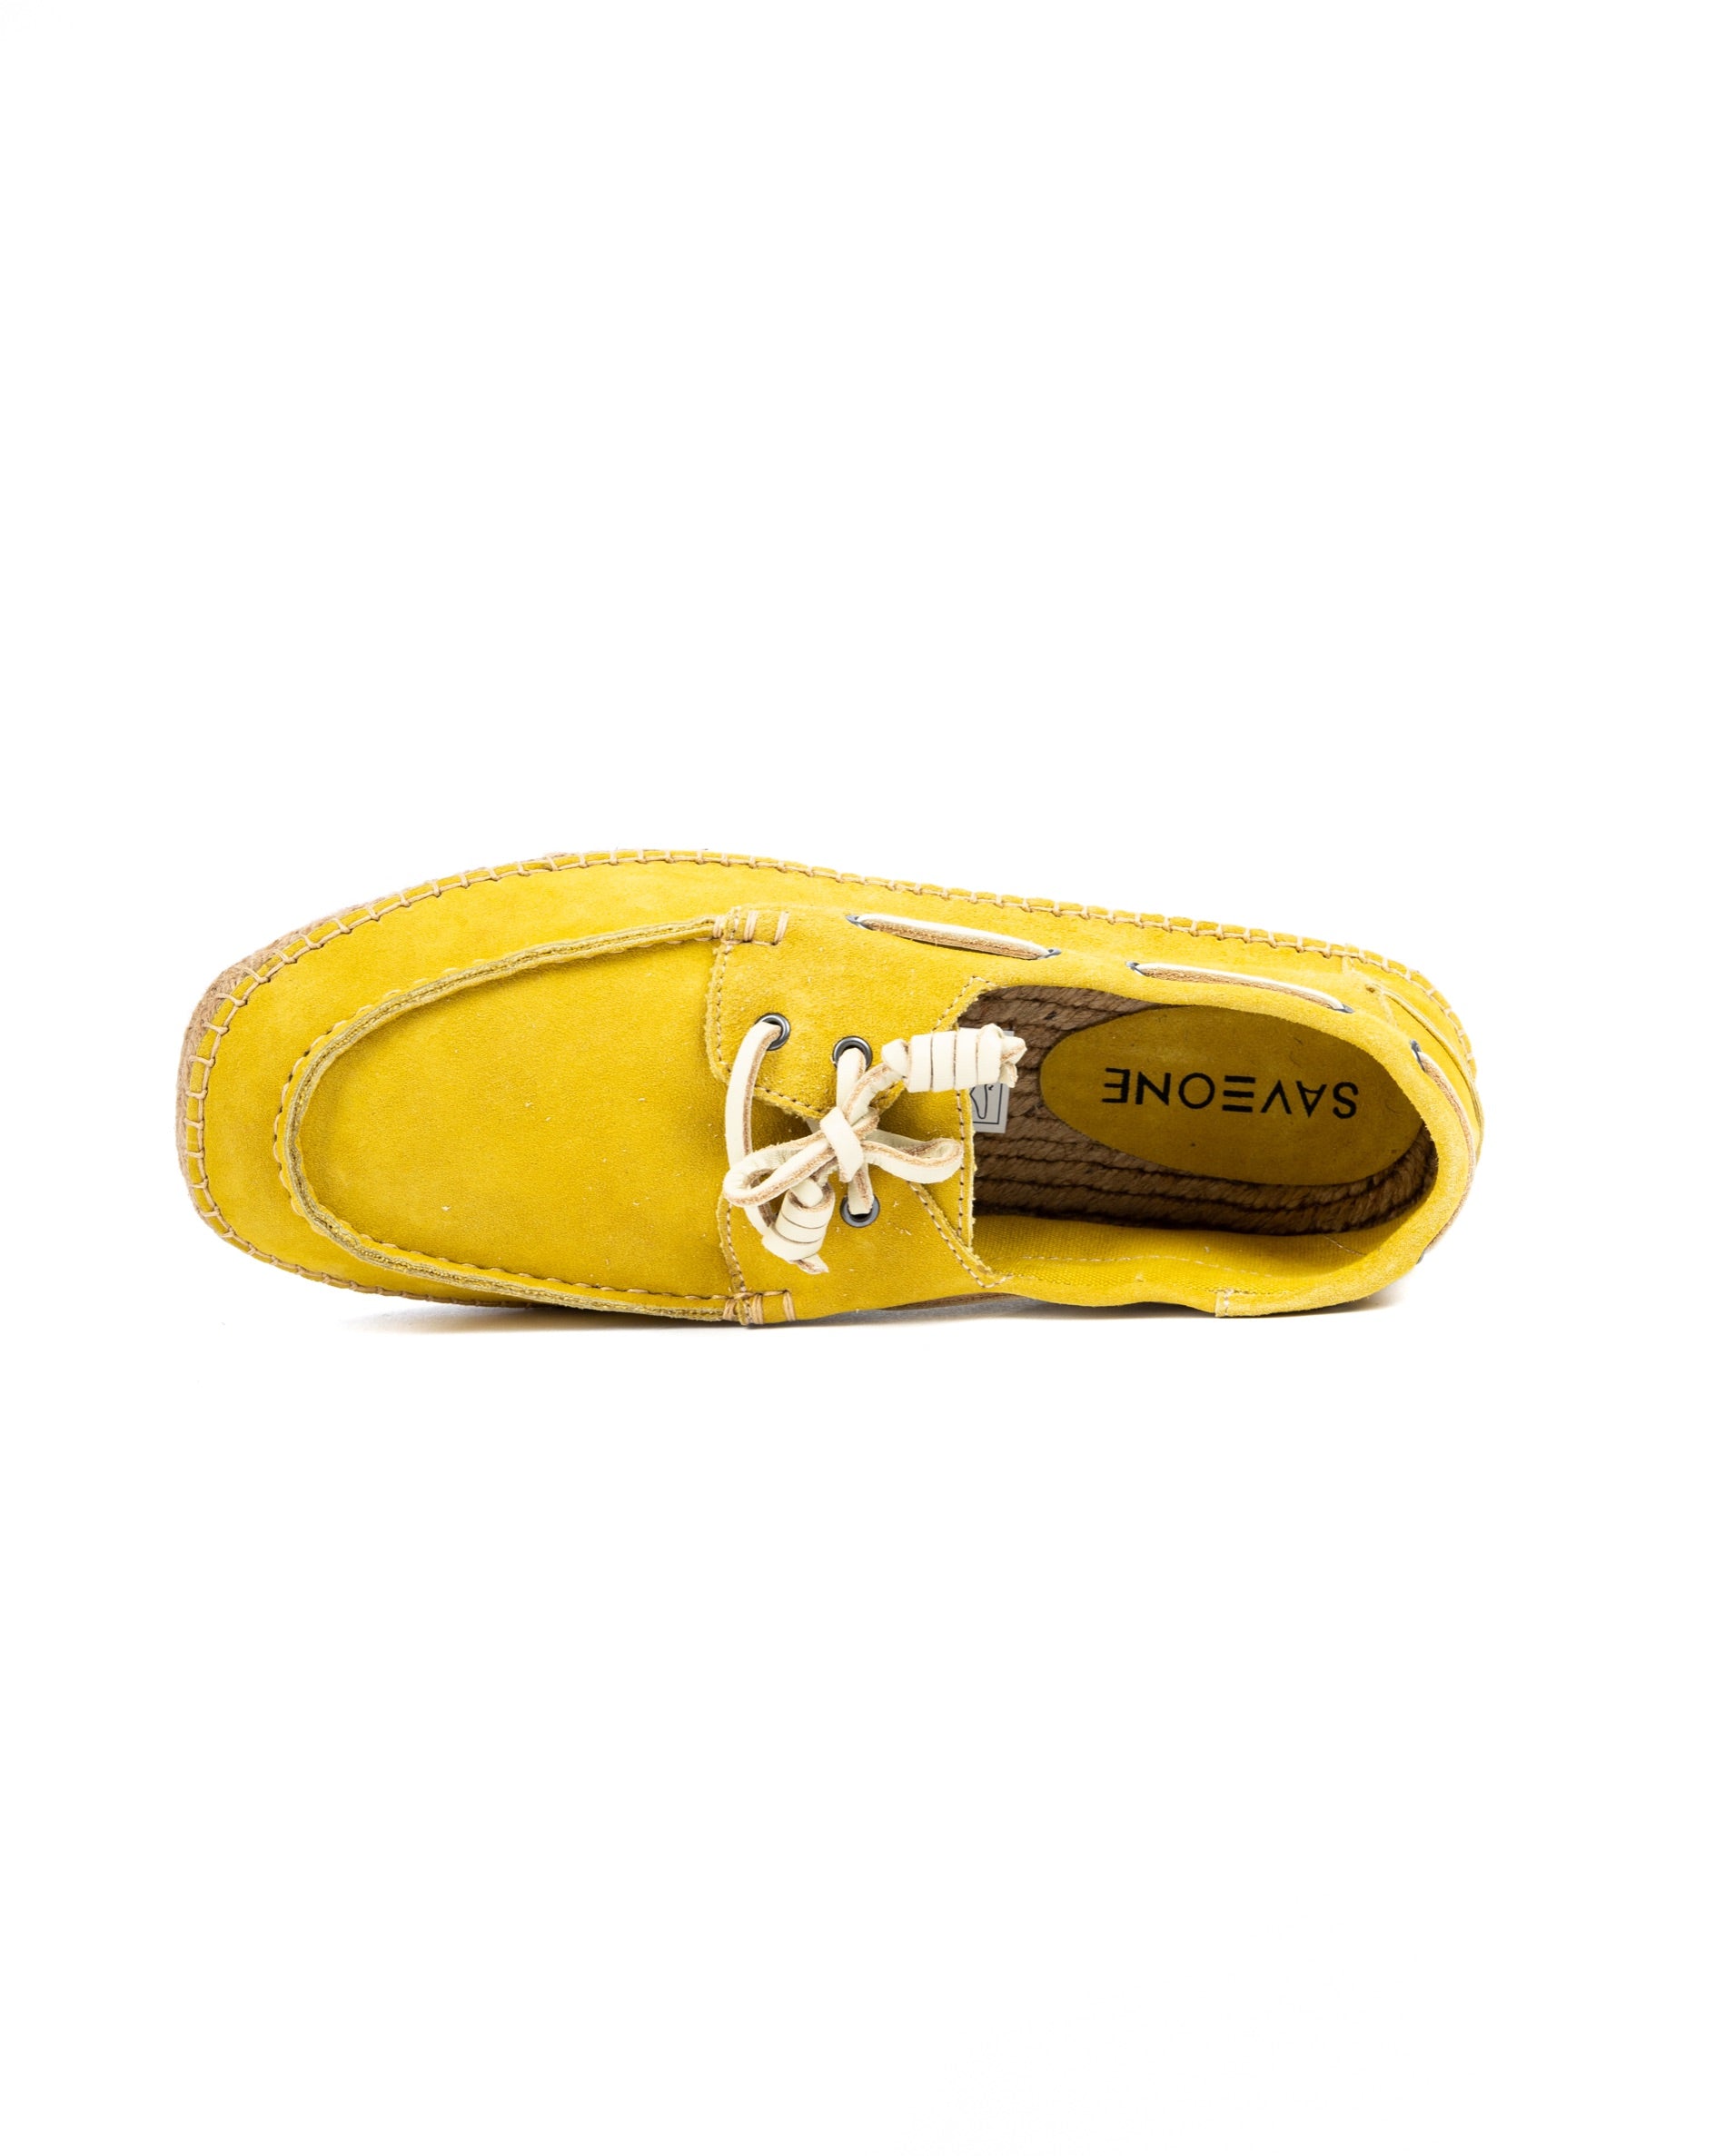 Pompei - barchetta in camoscio giallo fondo corda